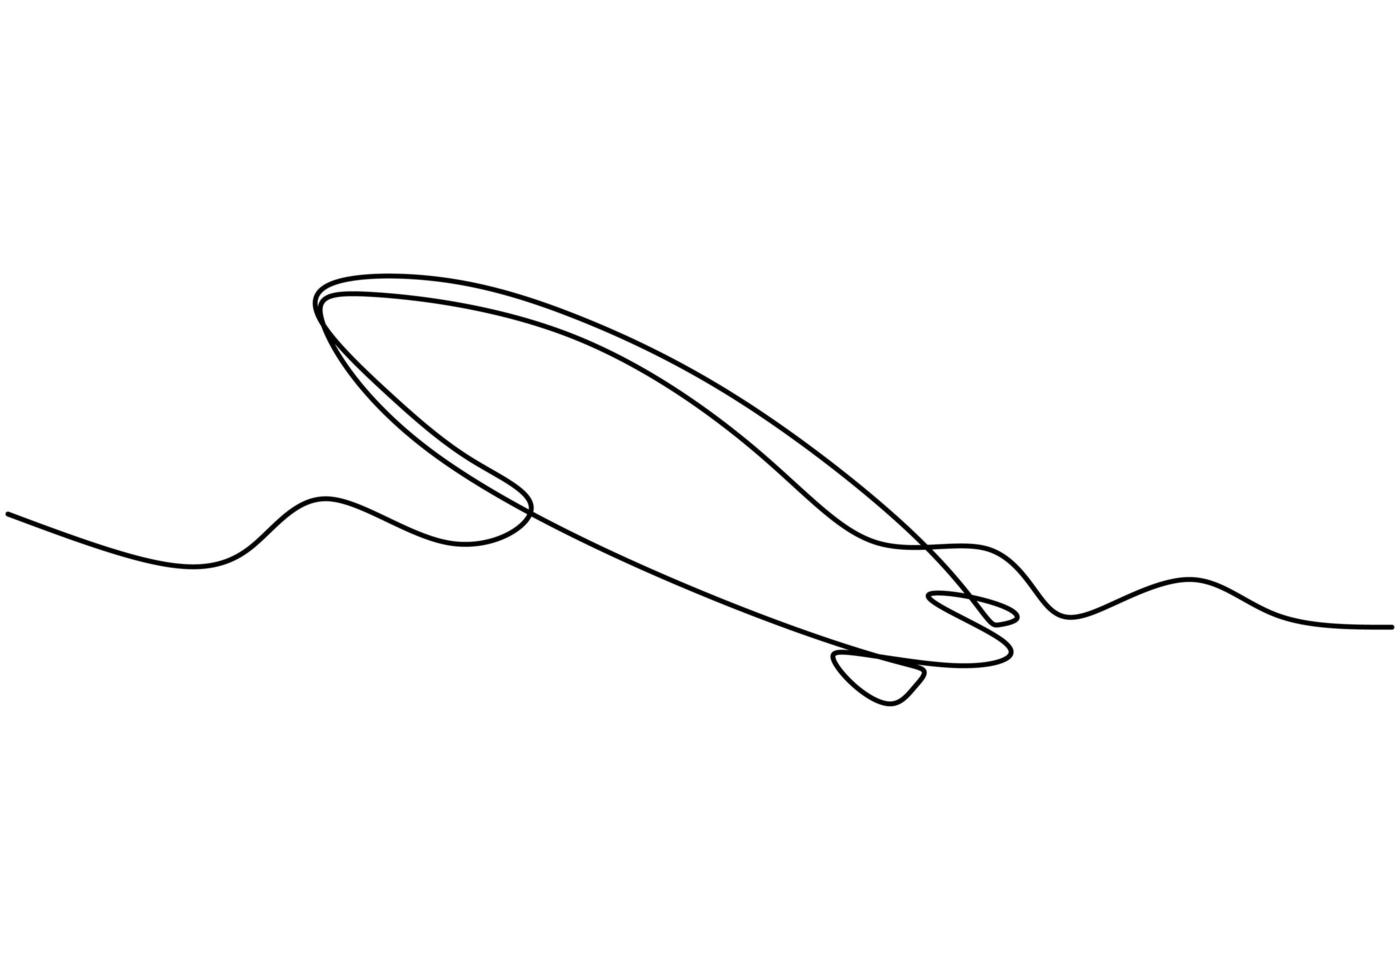 Globo de aire de una línea. Ilustración vectorial del cohete del globo del dirigible del avión. minimalismo continuo dibujado a mano vector